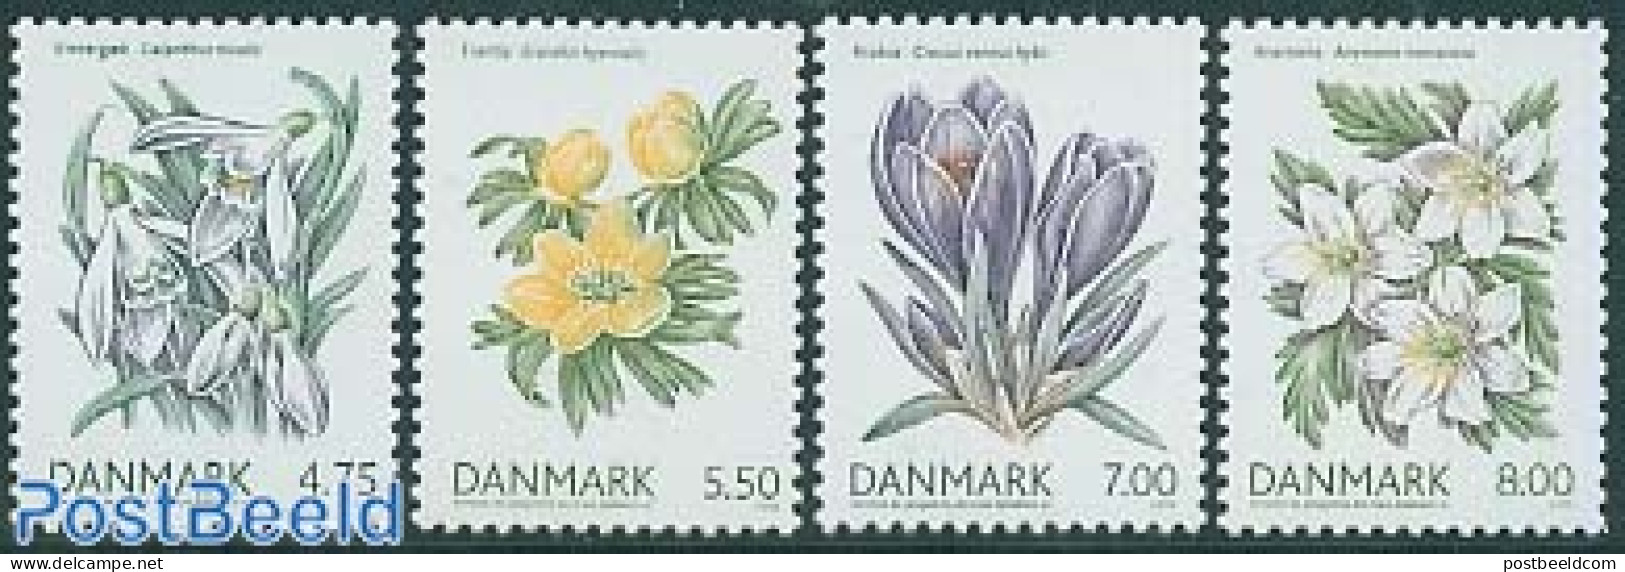 Denmark 2006 Spring Flowers 4v, Mint NH, Nature - Flowers & Plants - Neufs